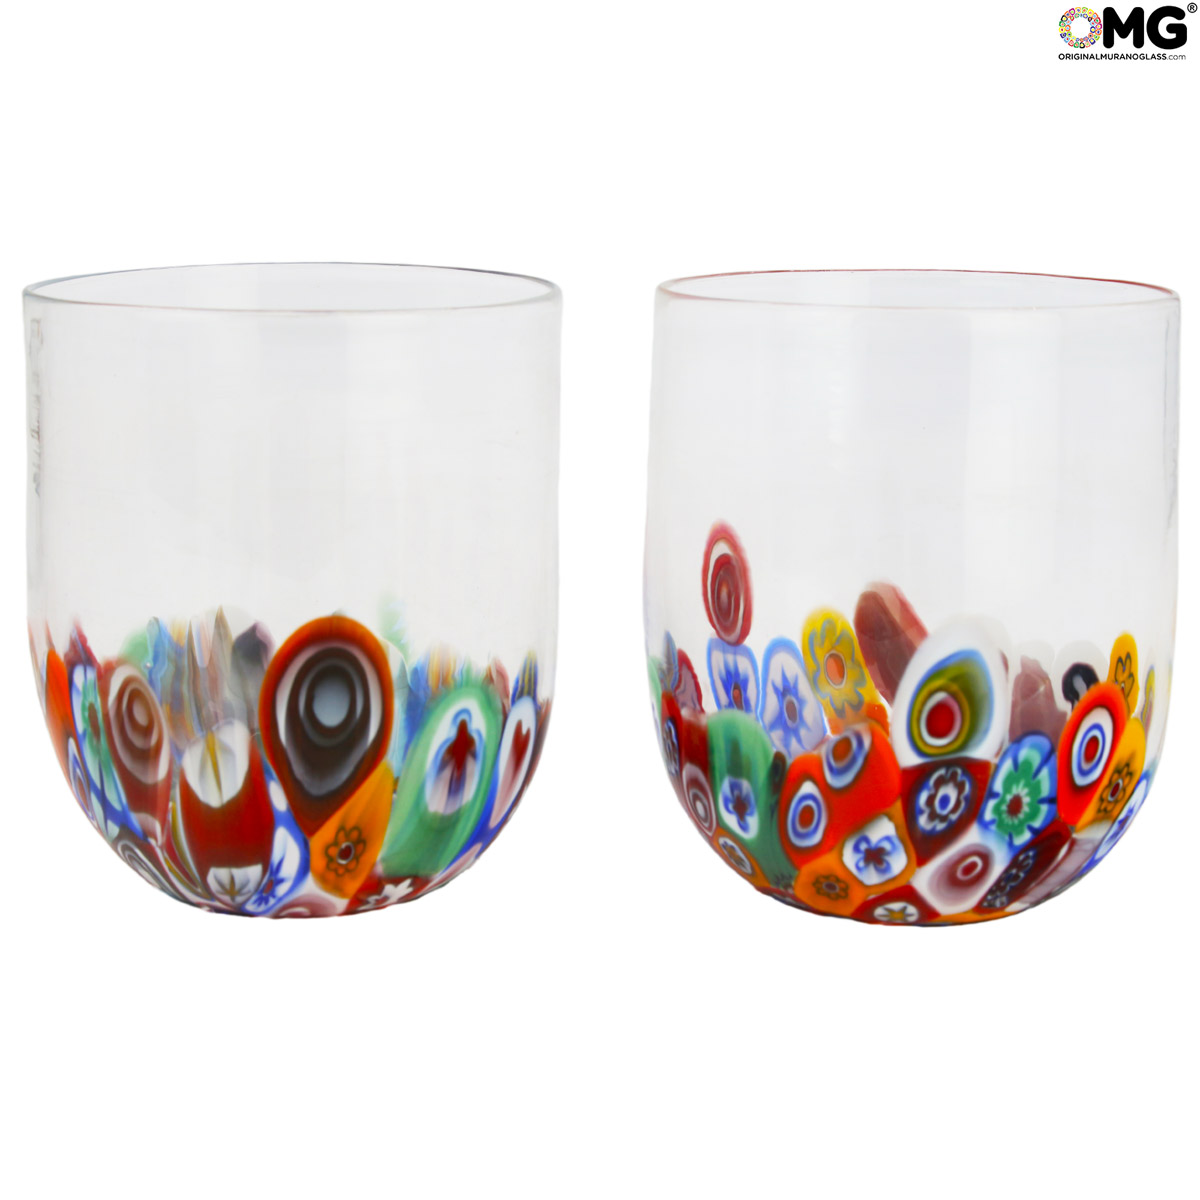 Drinking Glasses Tumblers Murano Sets: 6 Millefiori wide Drinking glasses -  Goto in Murrine - Original Murano Glass OMG